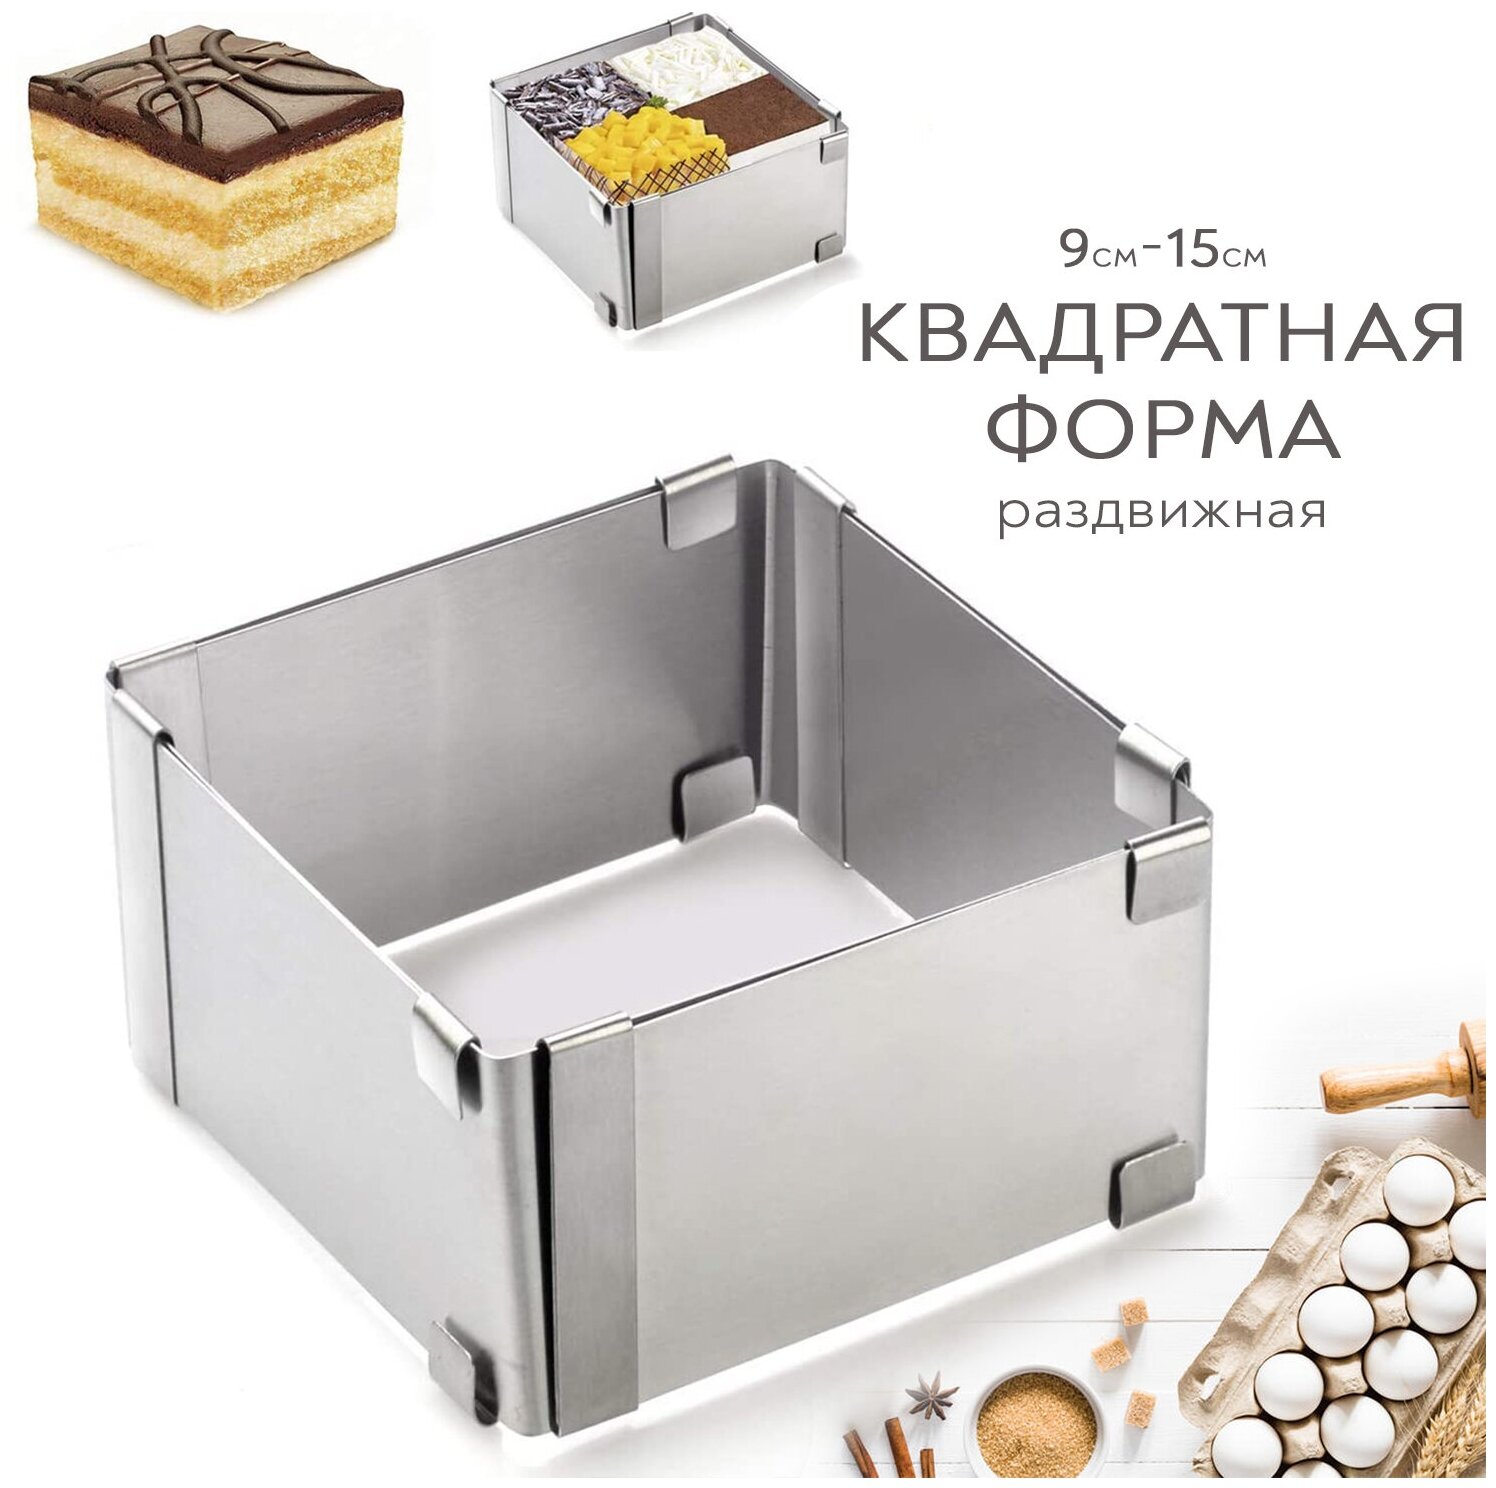 Металлическая форма разъемная SimpleShop для выпечки кексов тортов бисквита/ Раздвижное кулинарное кольцо регулируемое для выкладки салатов